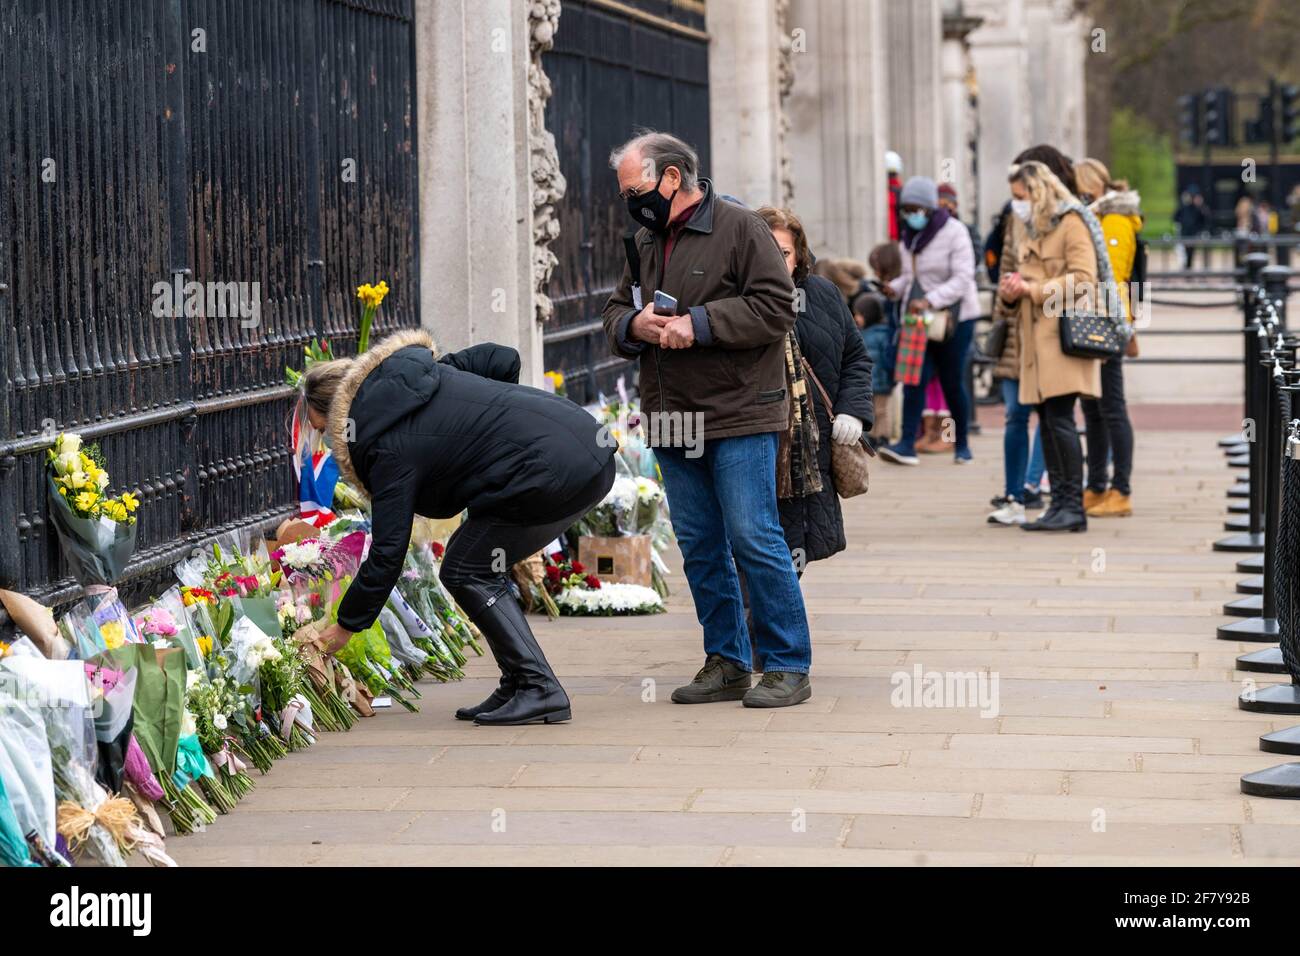 Londres, Royaume-Uni. 10 avril 2021. Des foules se rassemblent devant le palais de Buckingham pour déposer des hommages floraux à la suite de la mort de HRH le prince Philip, duc d'Édimbourg crédit : Ian Davidson/Alay Live News Banque D'Images